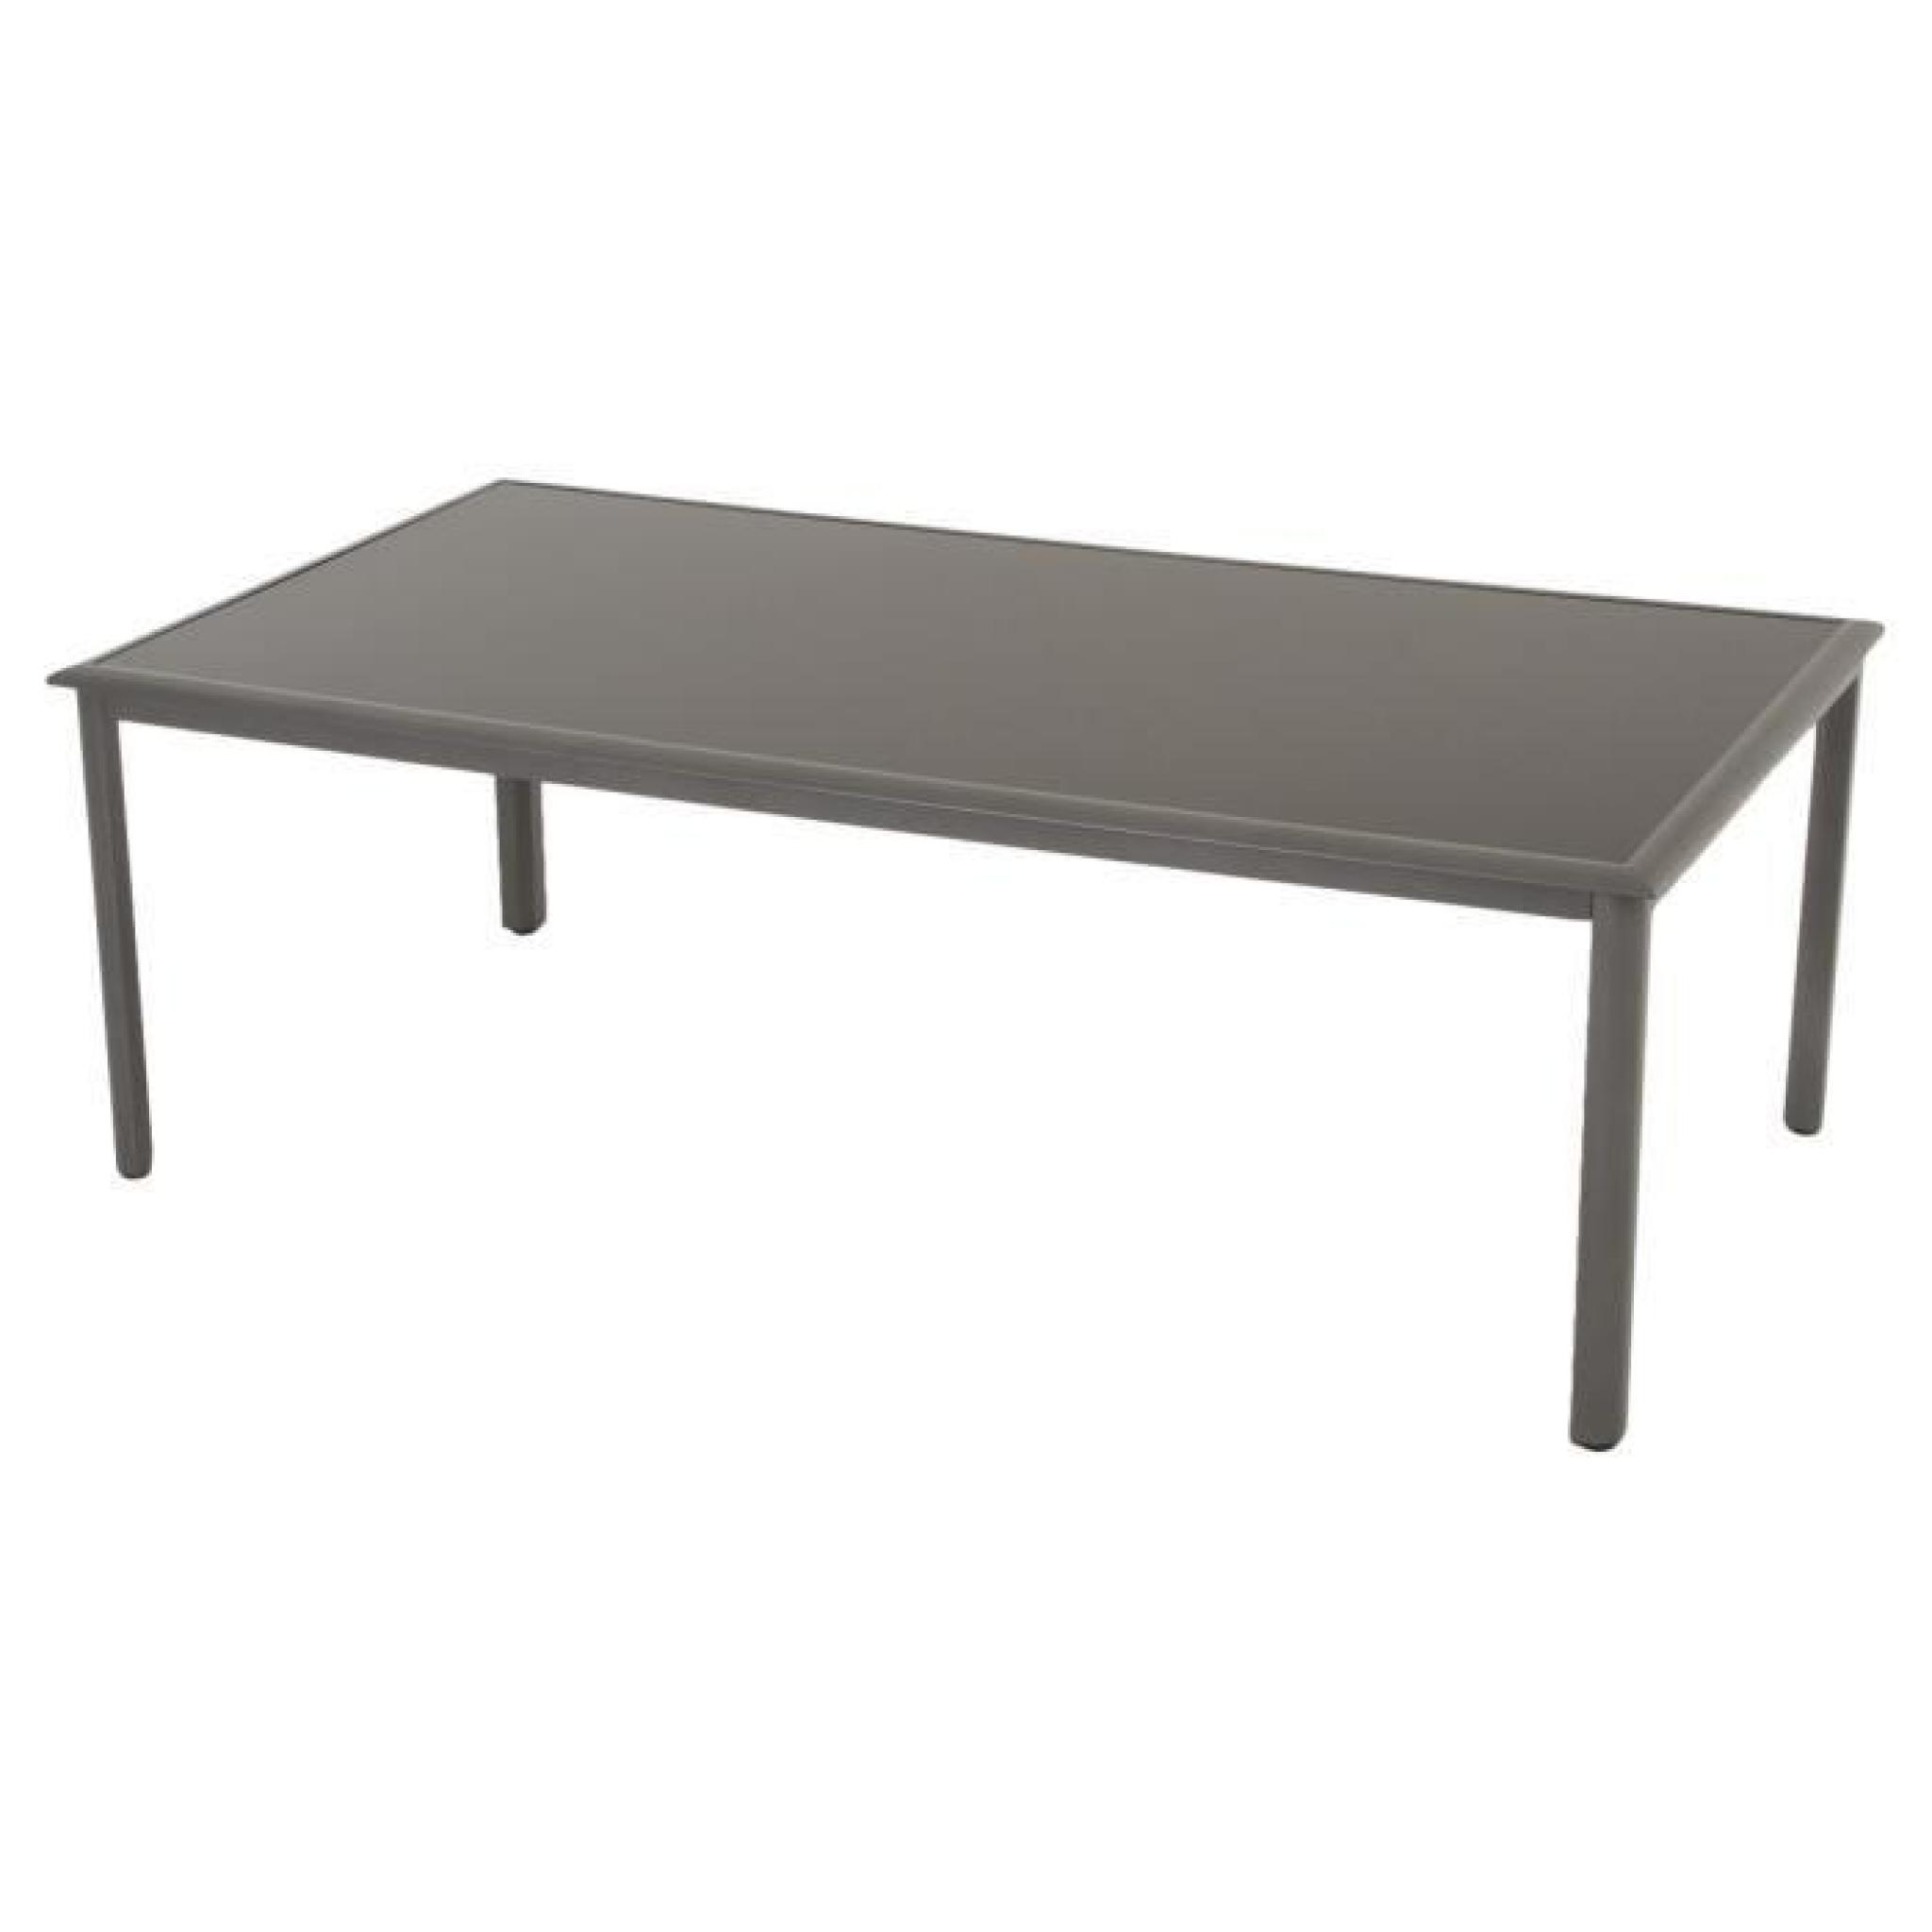 Table Célia Taupe en Aluminium à 10 places, 218 x 118 x 74 cm